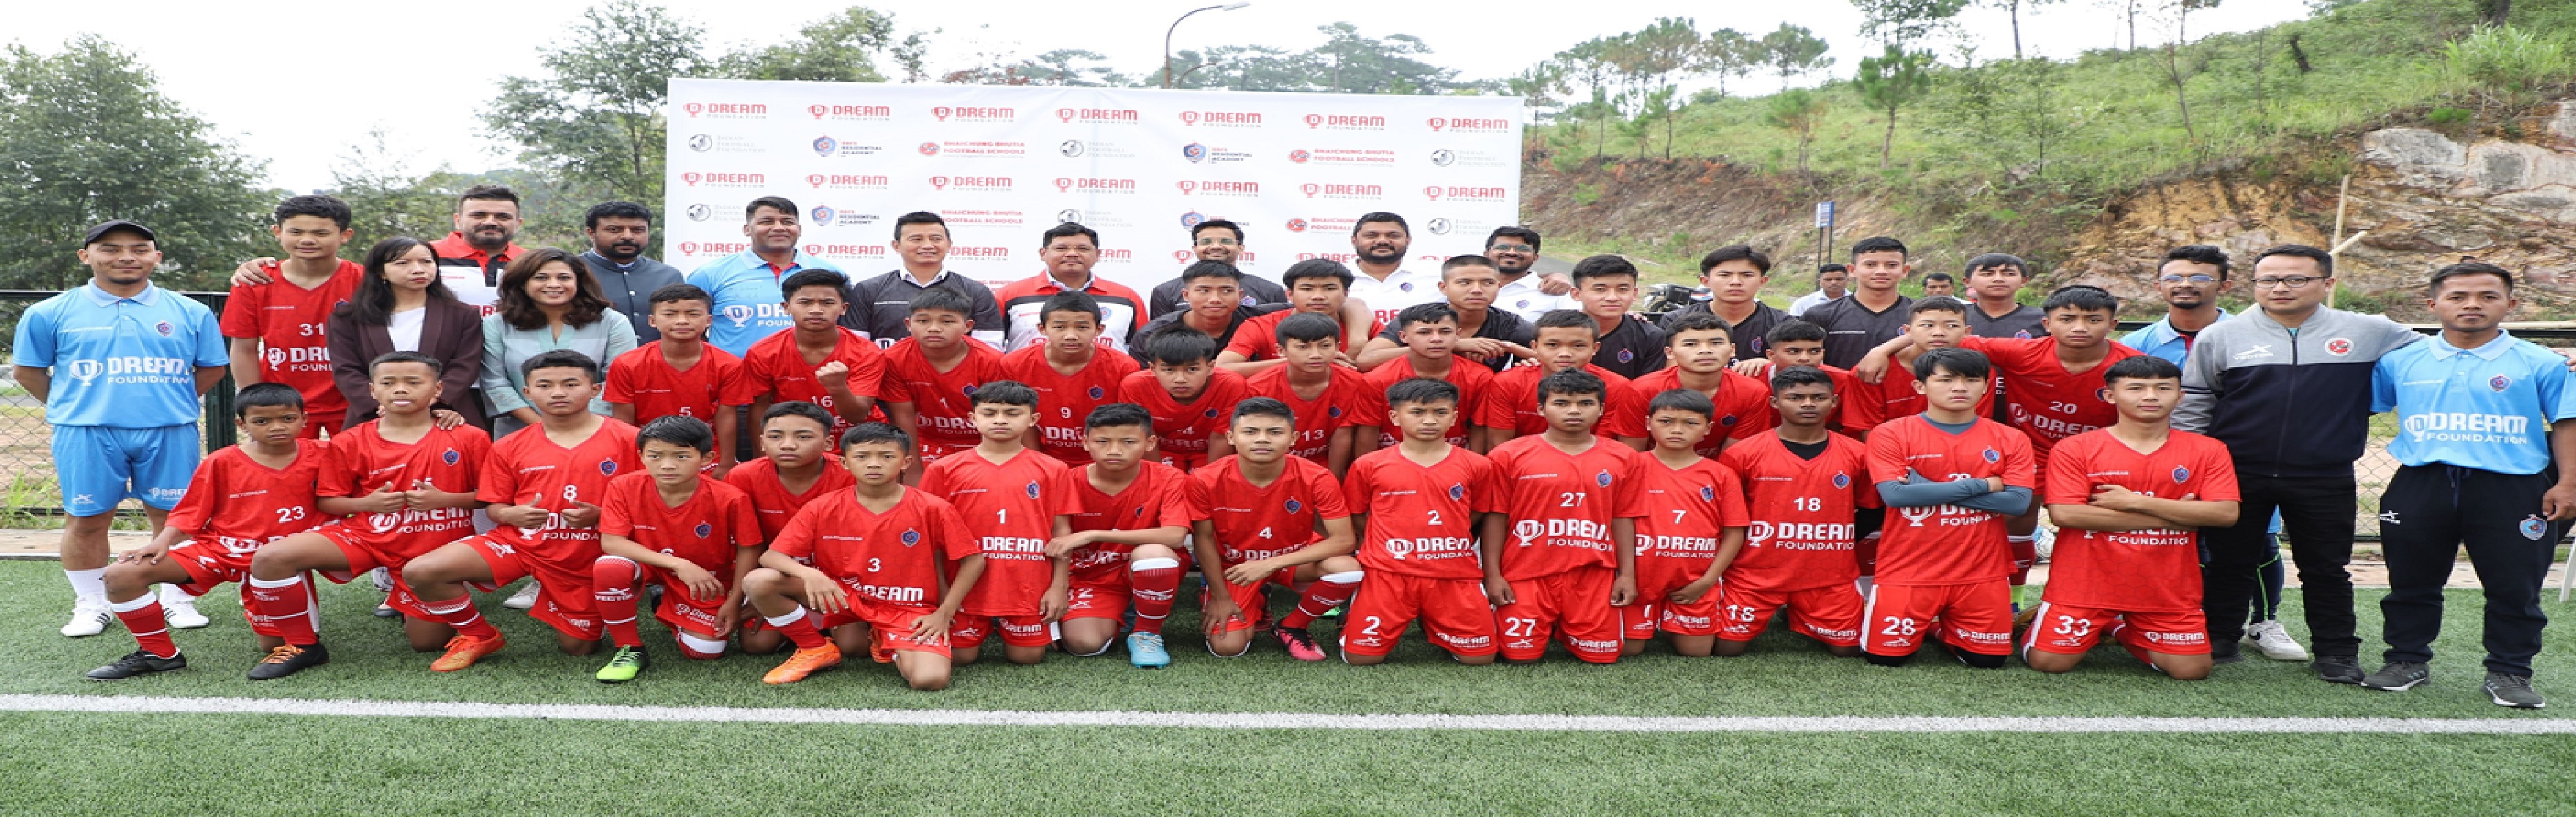 उभरते फुटबॉल खिलाड़ियों को बढ़ावा देने के लिए ड्रीम फाउंडेशन का बाइचुंग भूटिया फुटबॉल स्कूल के साथ करार